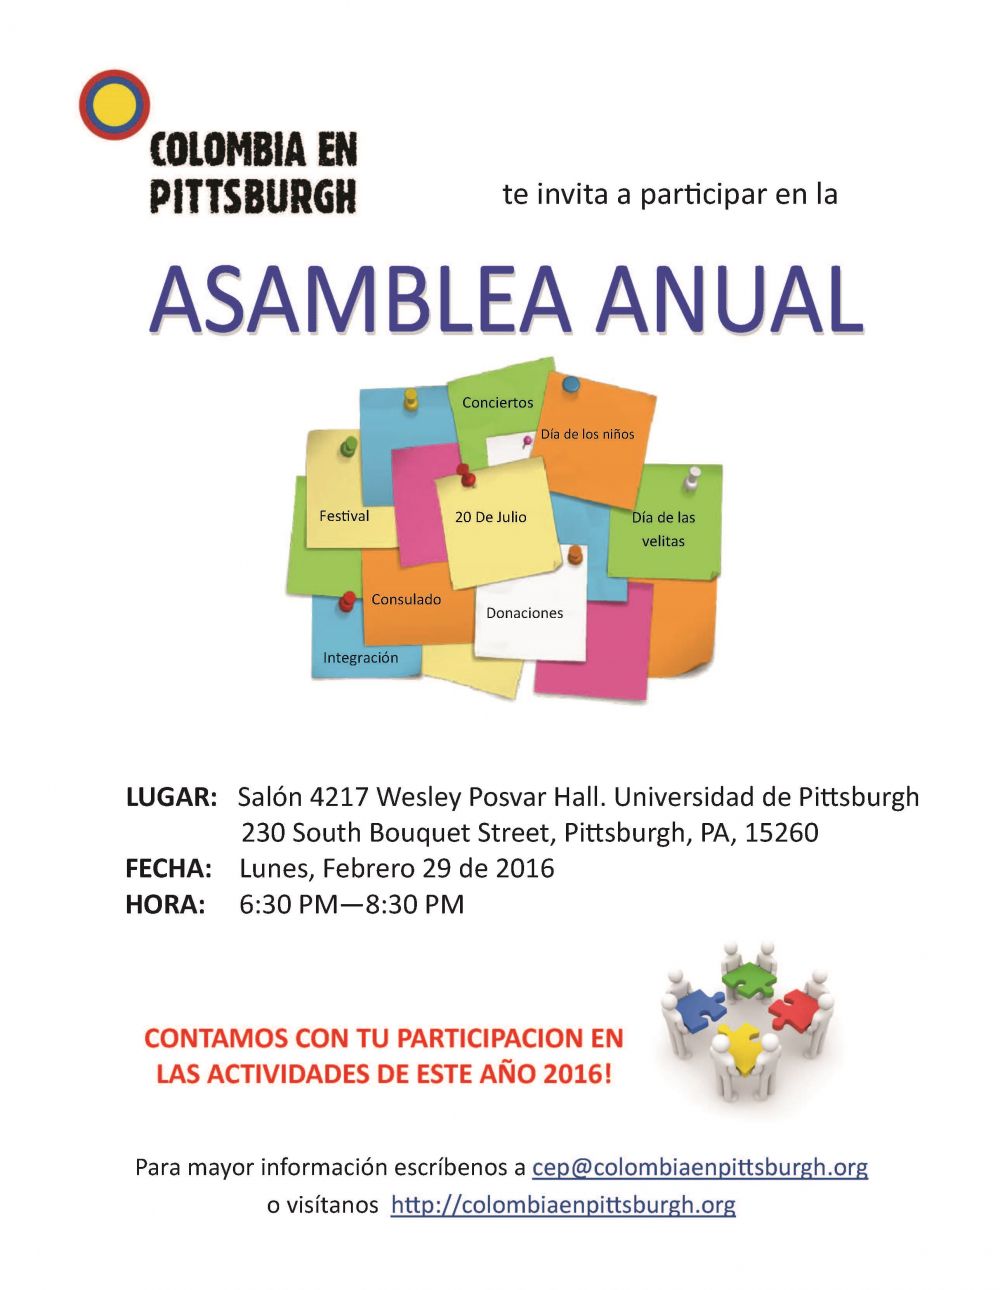 Asamblea General de Colombia en Pittsburgh - February 29, 2016 / 